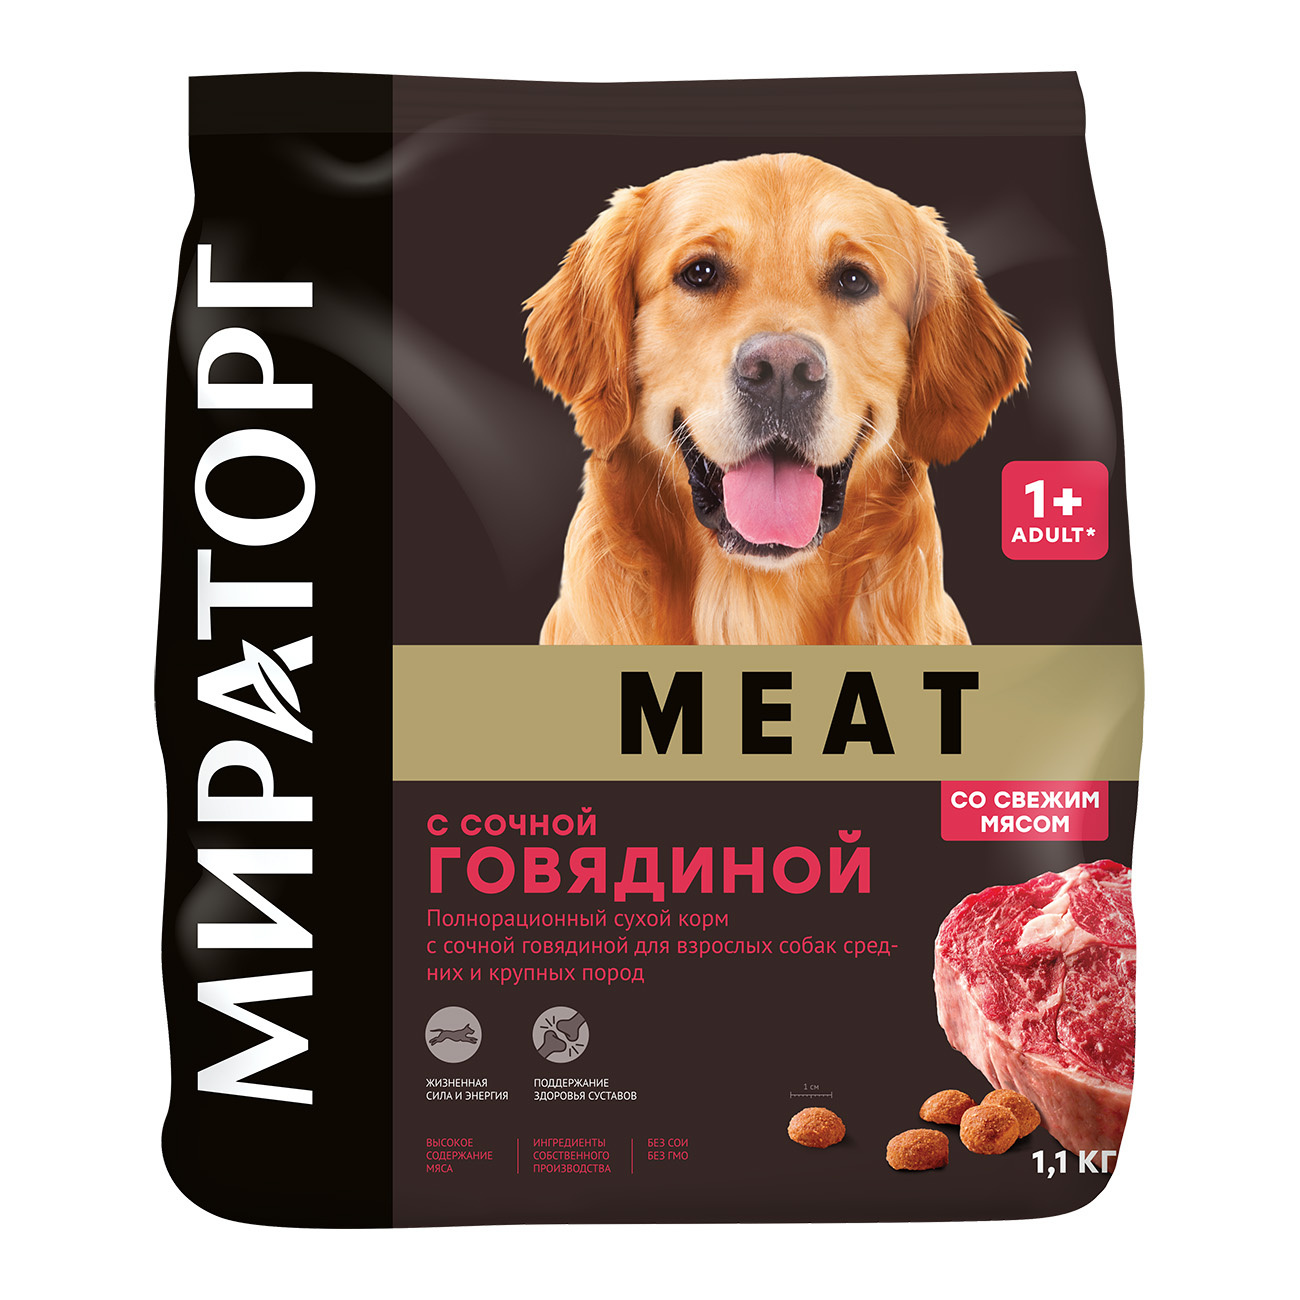 Мираторг полнорационный сухой корм для взрослых собак средних и крупных пород с сочной говядиной (1,1 кг)